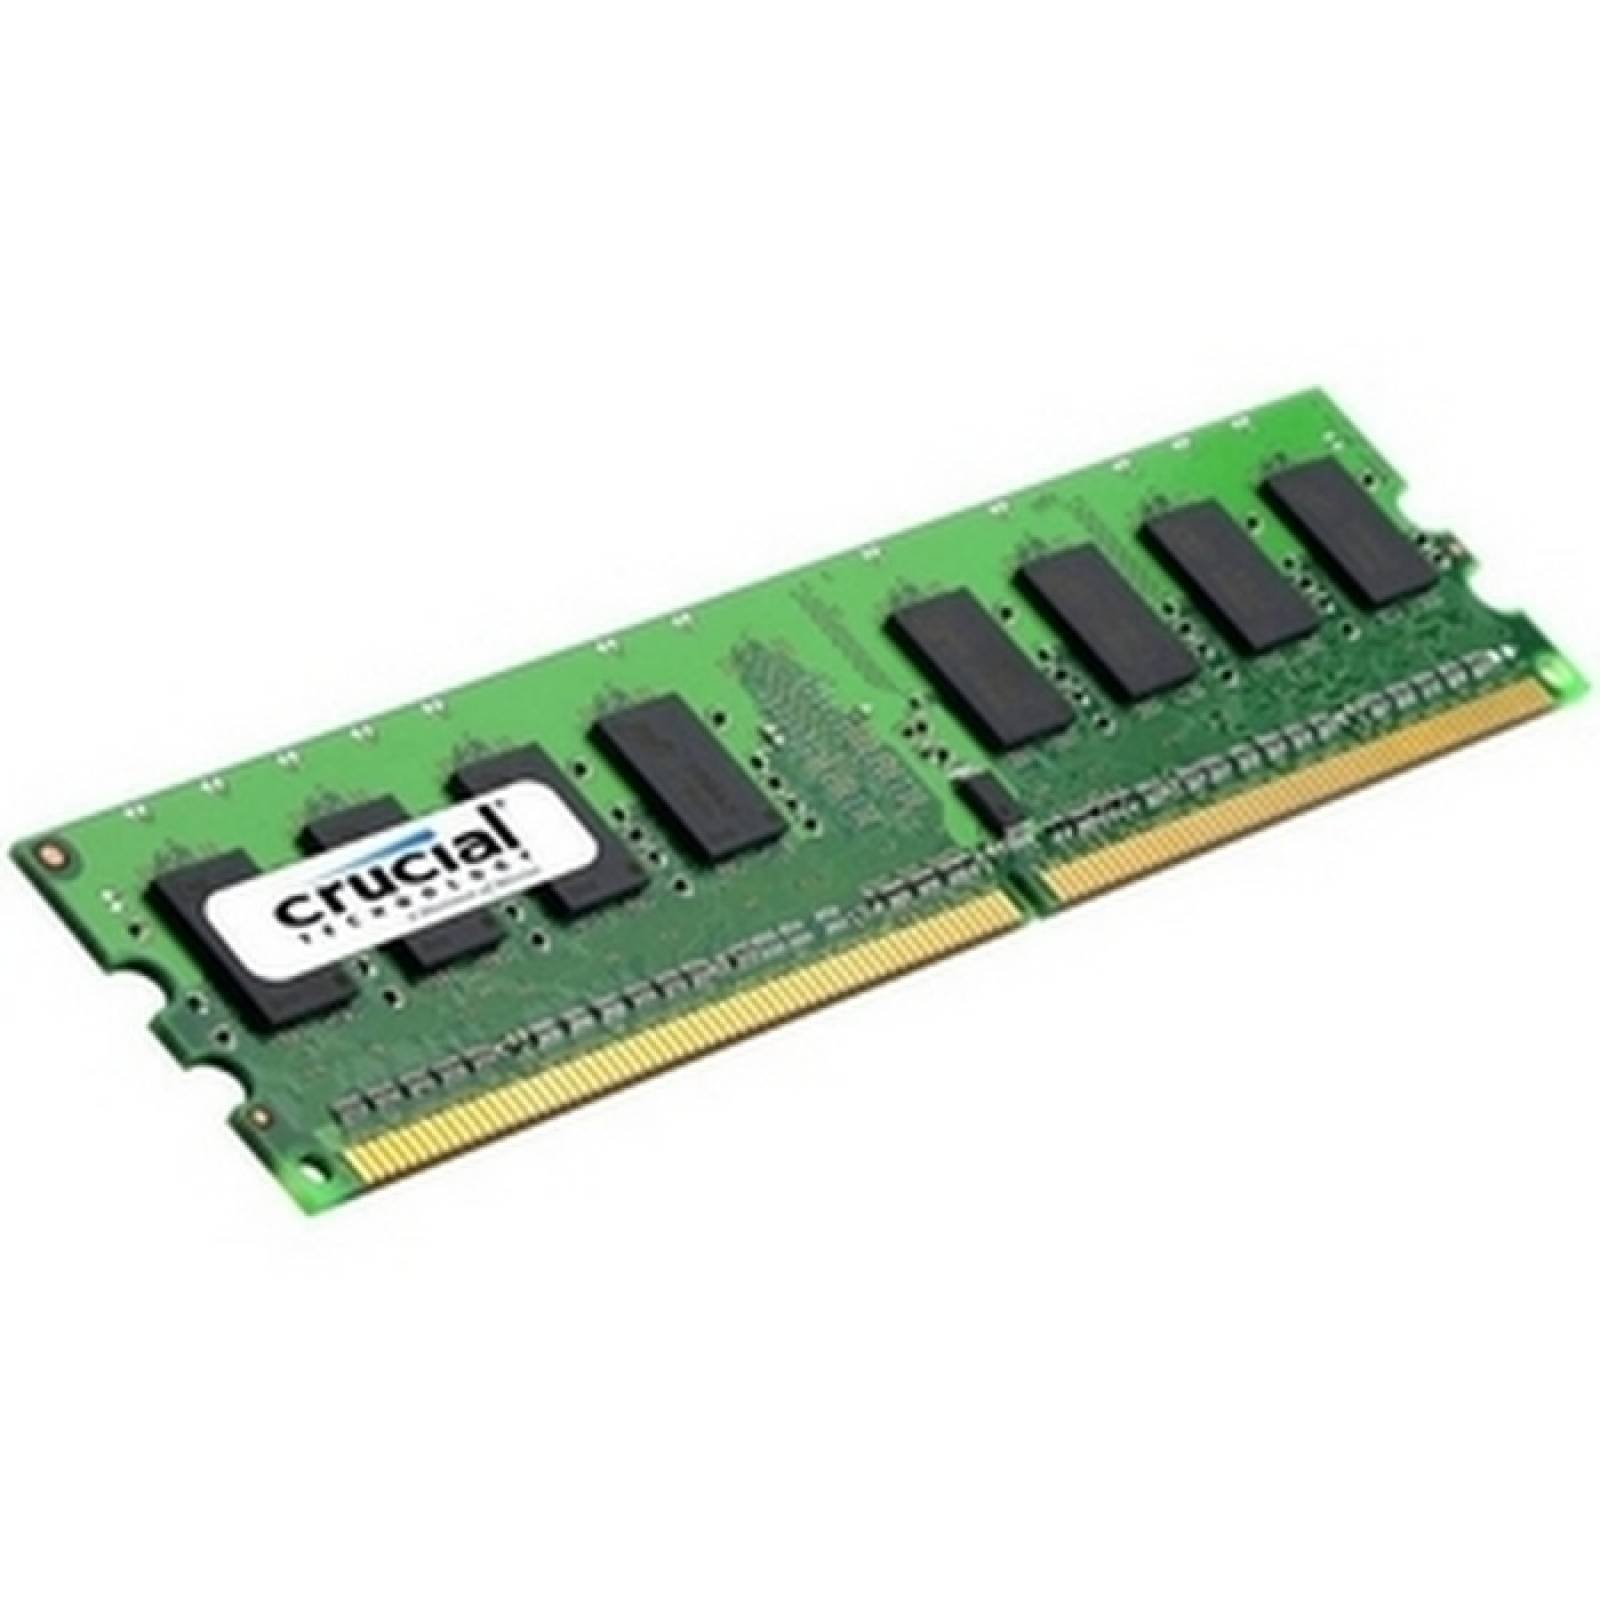 Crucial 1 GB DDR2 SDRAM Memory Module